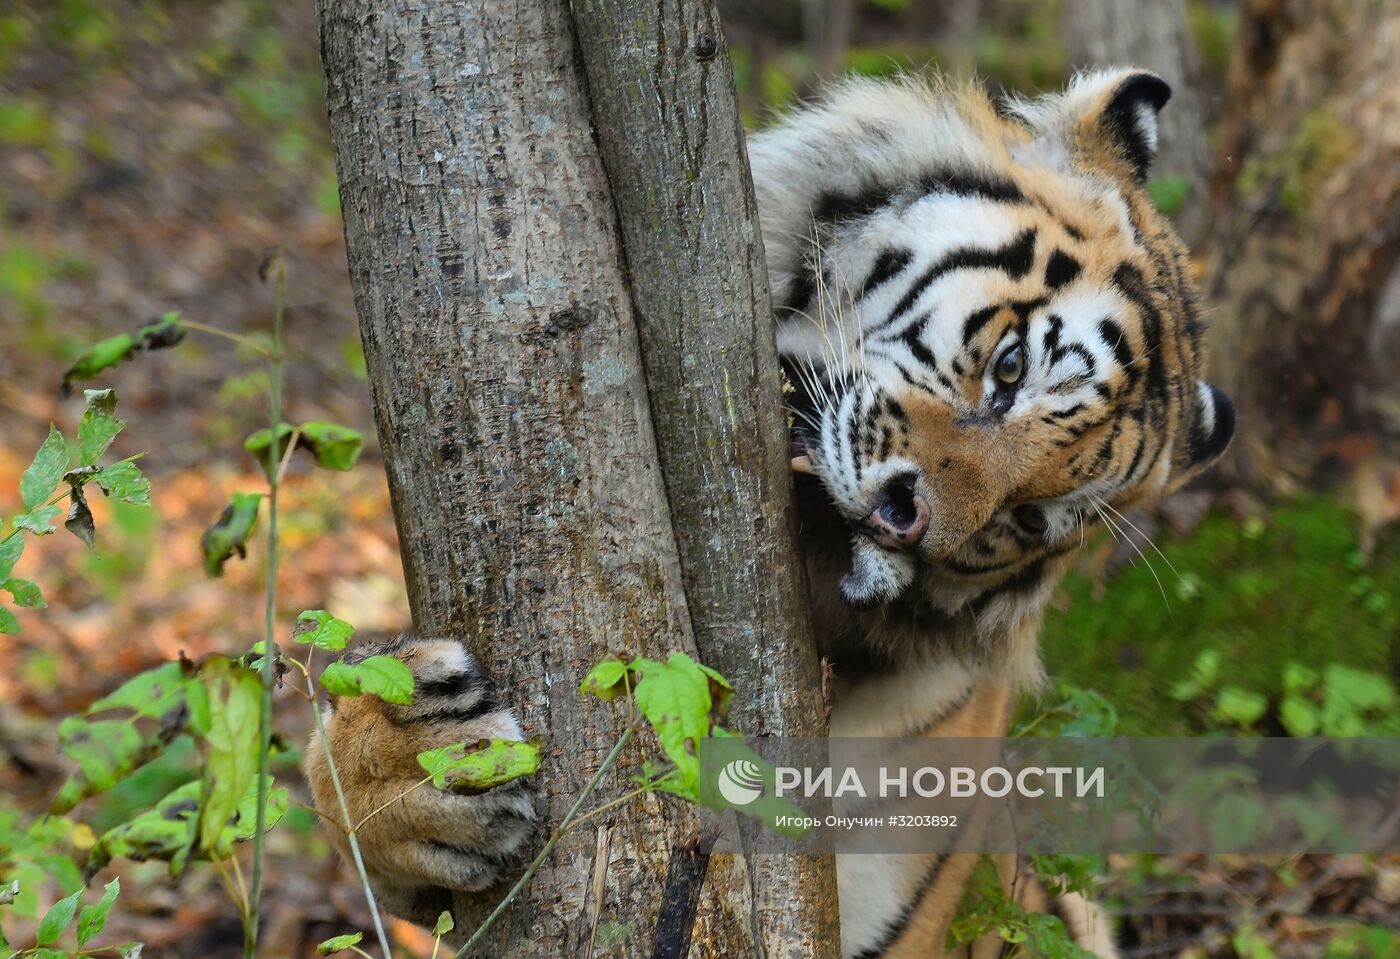 Центр реабилитации диких животных "Утес" в Хабаровском крае